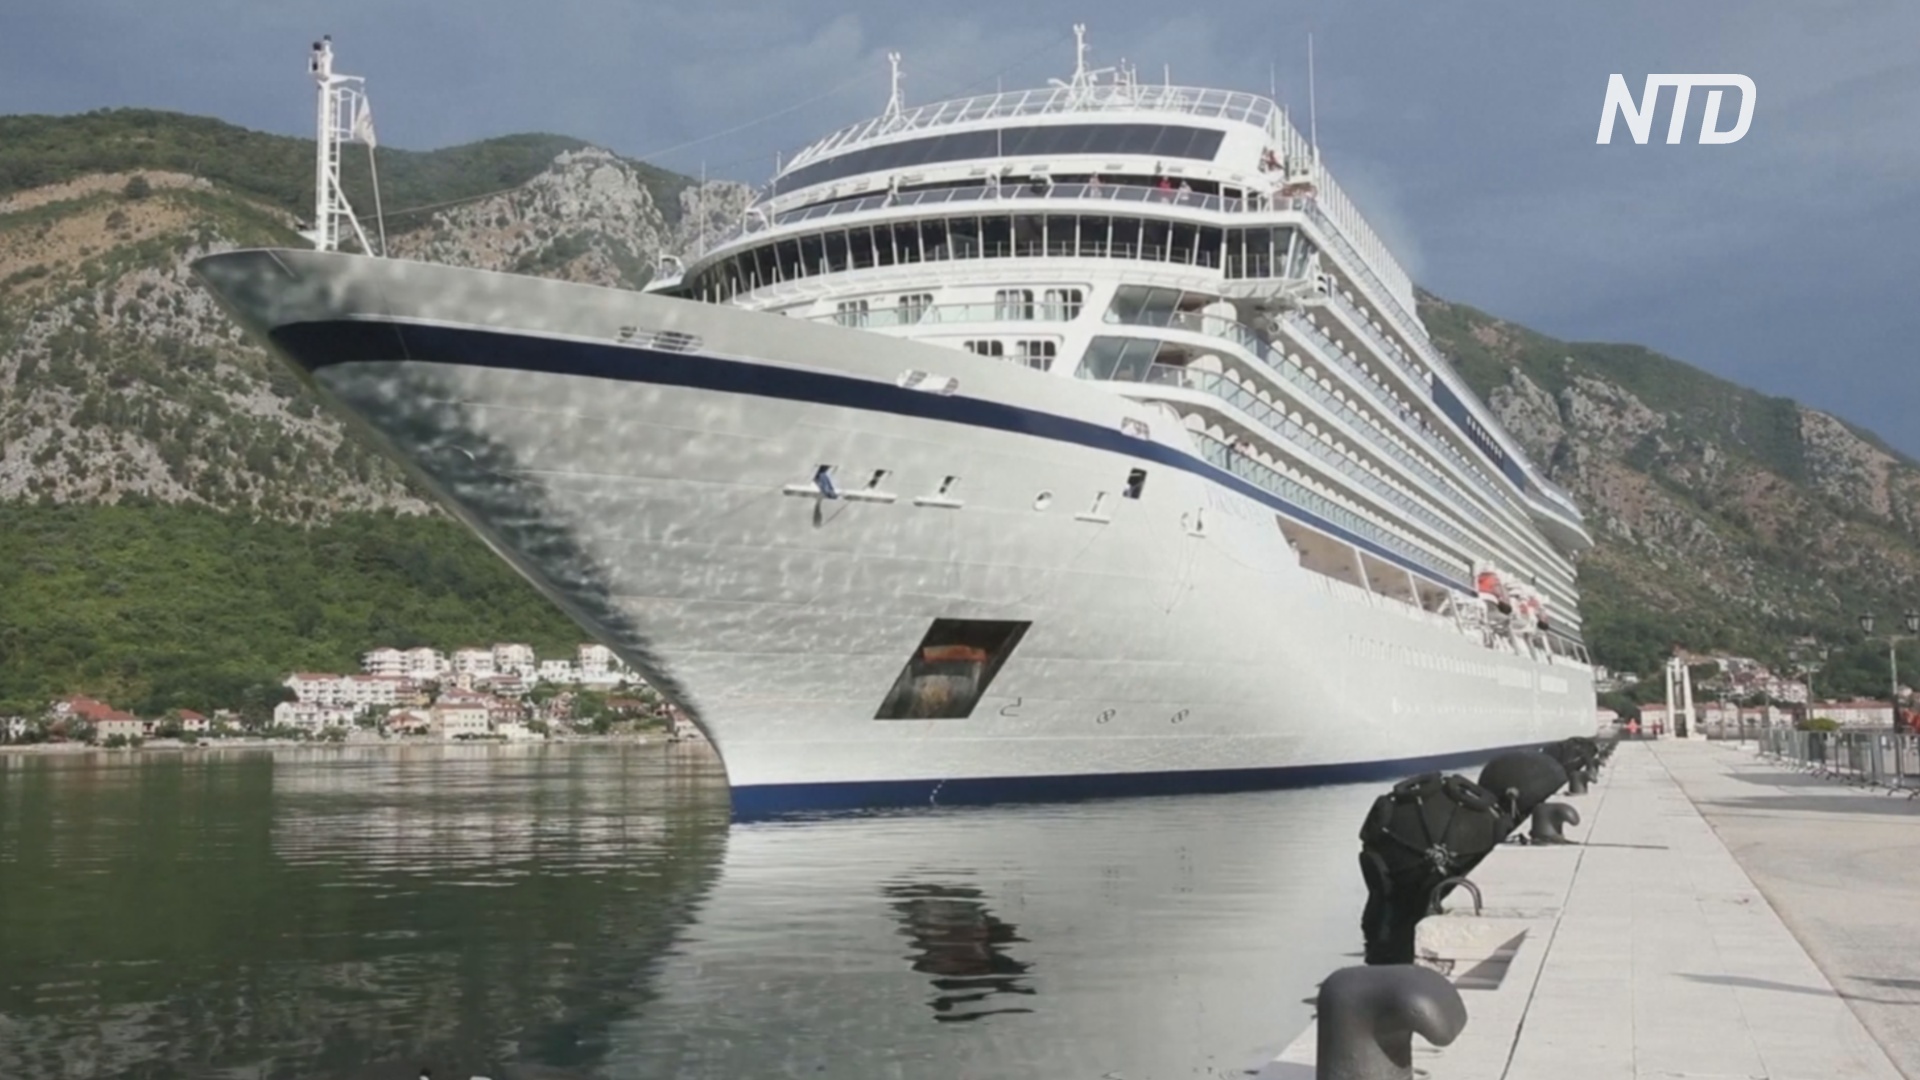 Круизные лайнеры возвращаются в Черногорию через 16 месяцев застоя